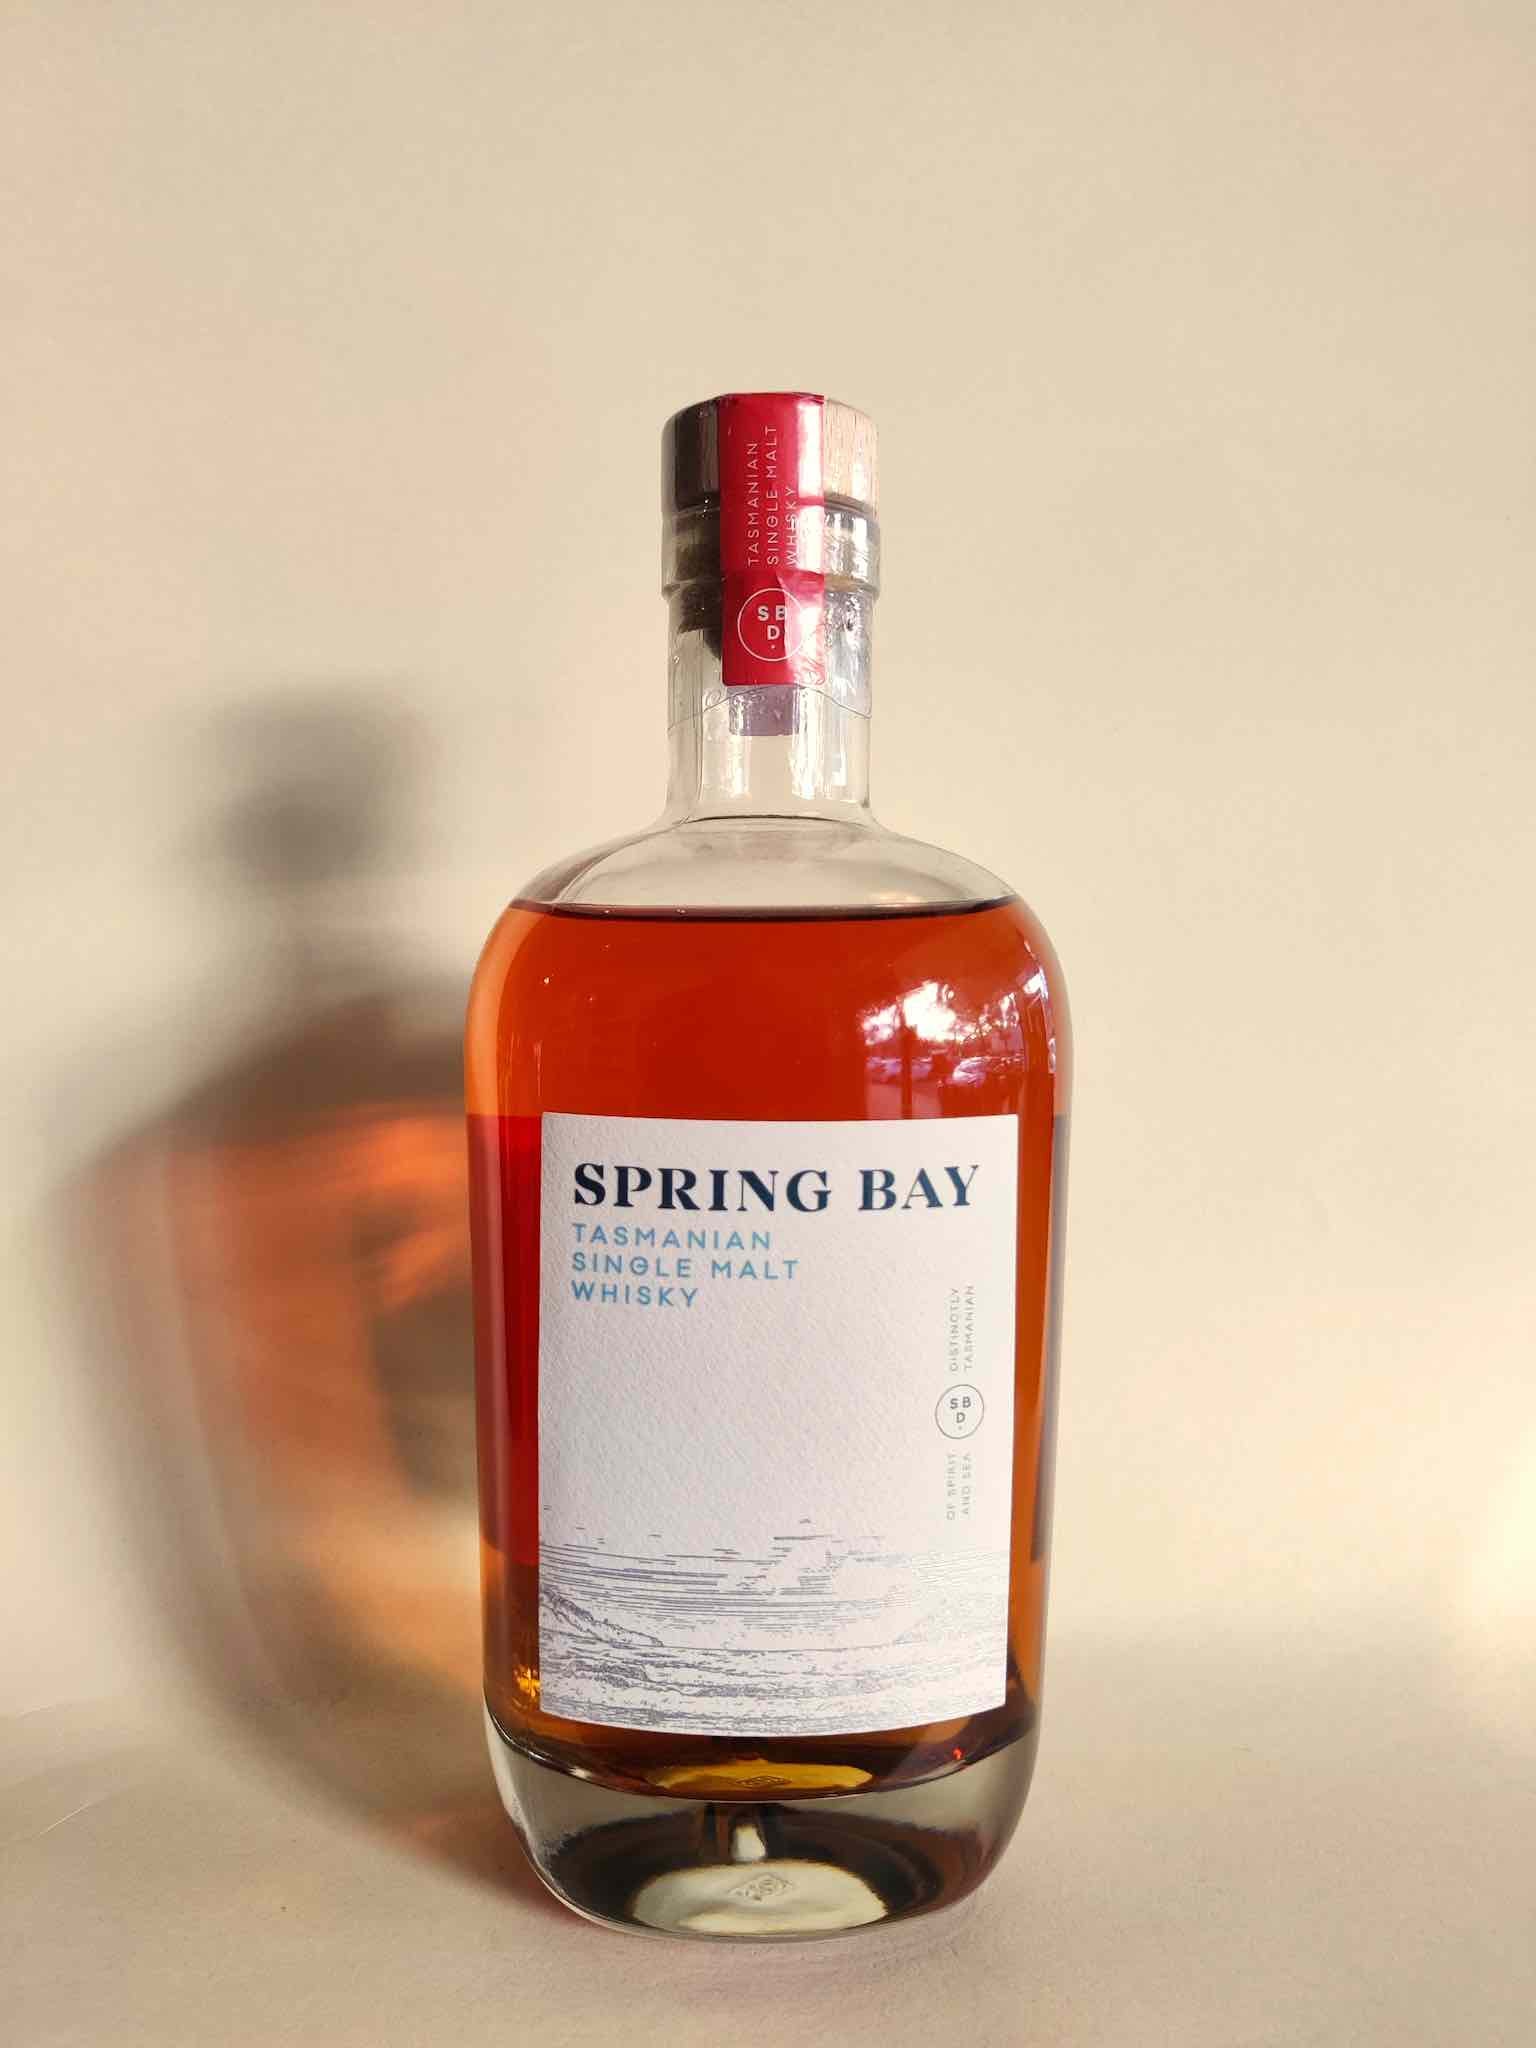 Spring Bay 'Tawny' Single Malt Whisky